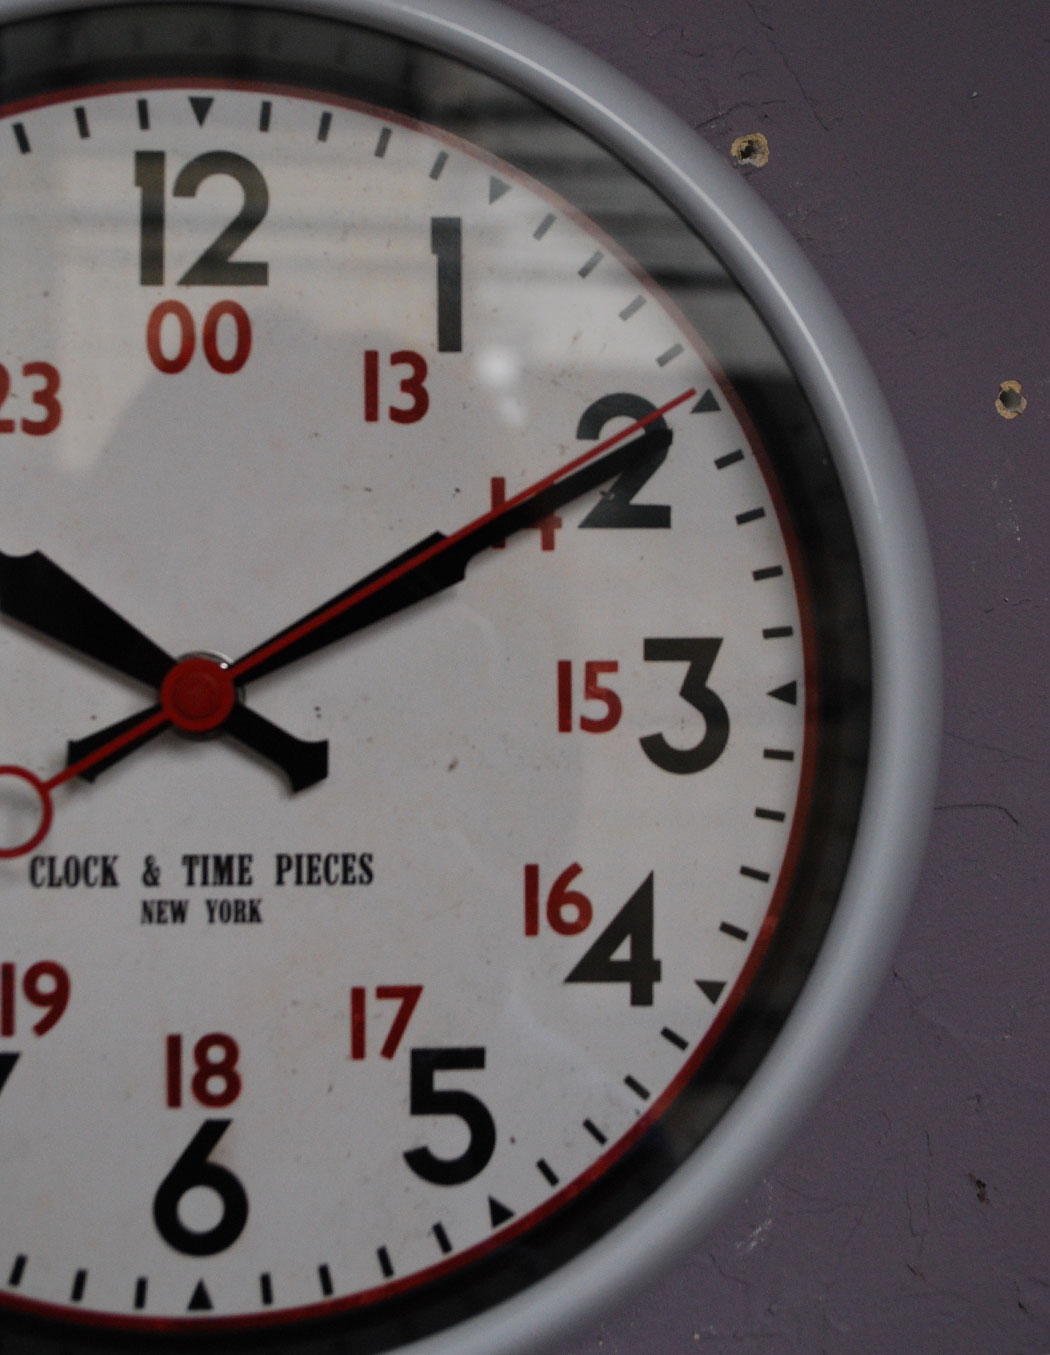 ミラー・時計　インテリア雑貨　ウォールクロック (ホワイト)　お洒落な壁掛け時計(電池なし)。「オシャレな時計がなかなかなくて・・」と思っていた方にぜひ使って頂きたい時計です。(n12-051)